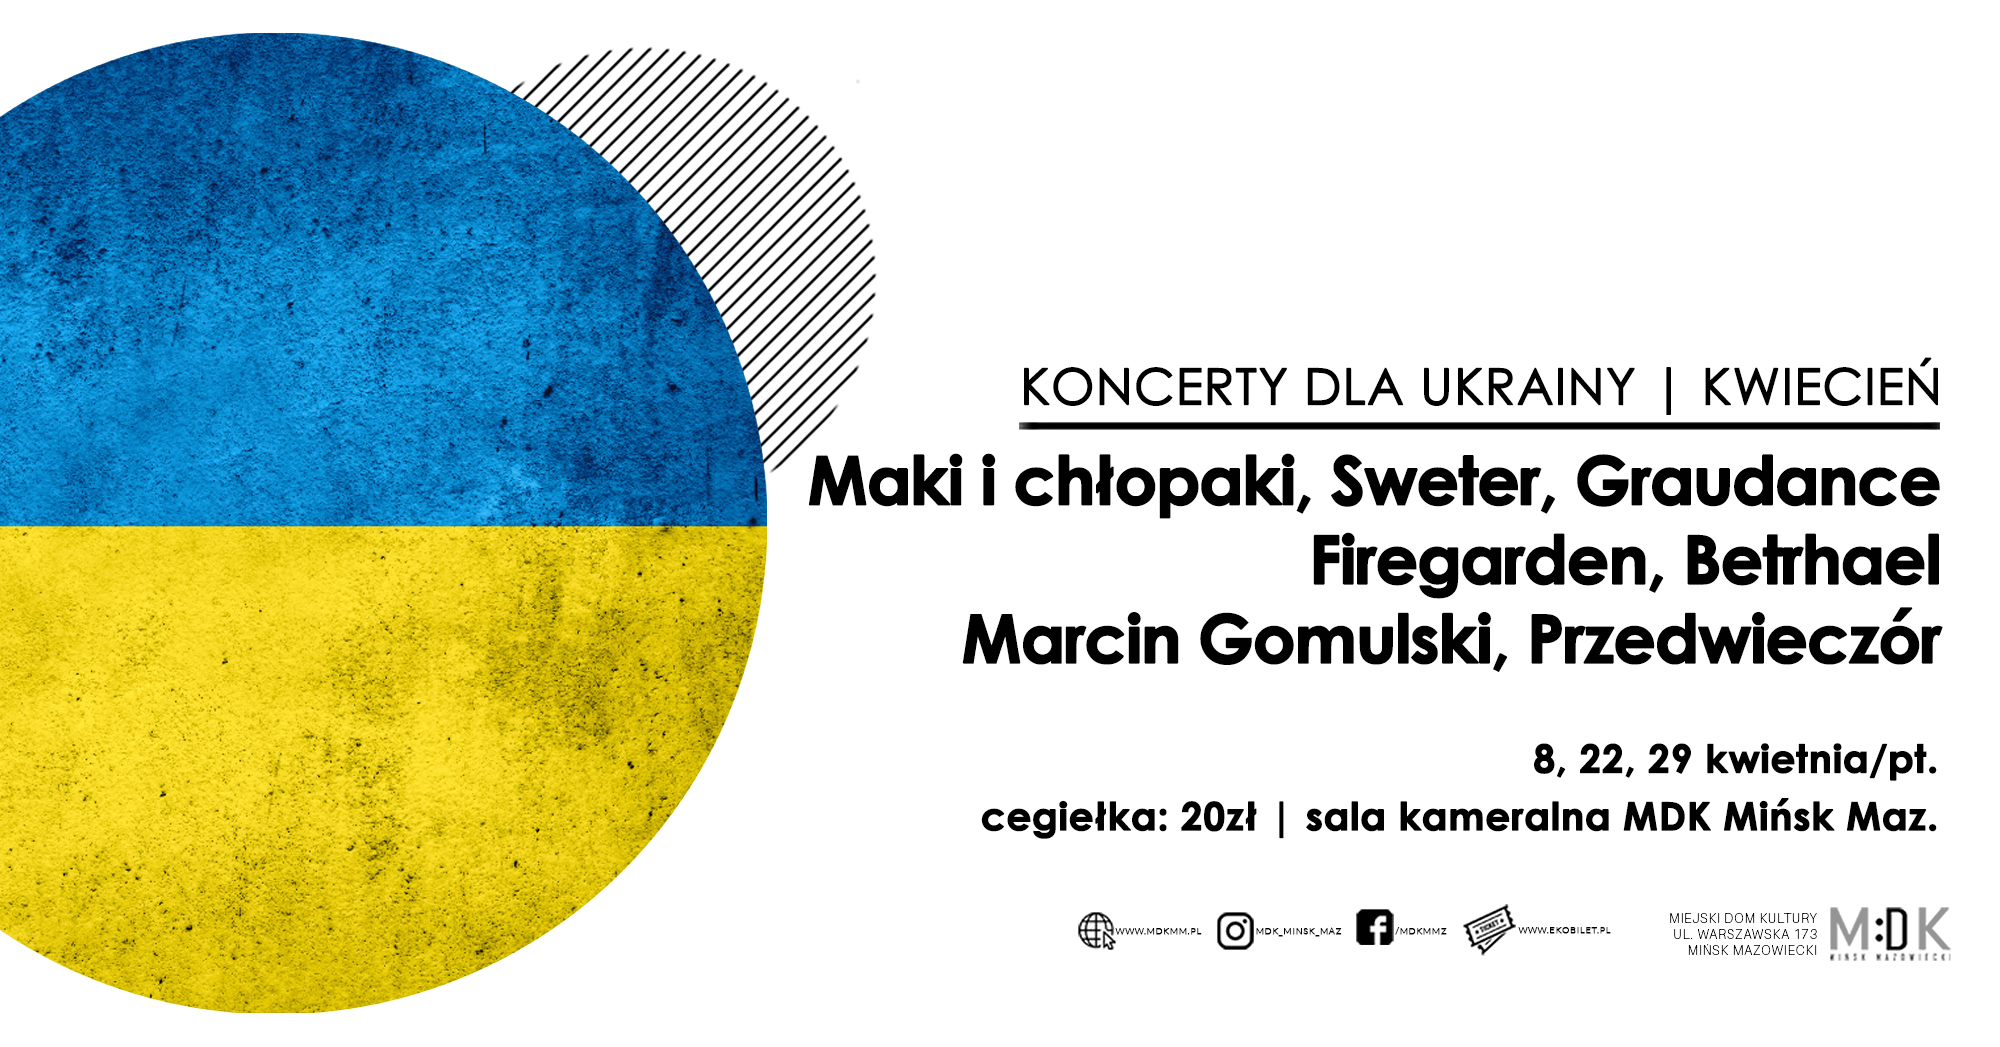 Marcin Gomulski, Przedwieczór - Koncerty dla Ukrainy w MDK Mińsk Maz. | KWIECIEŃ